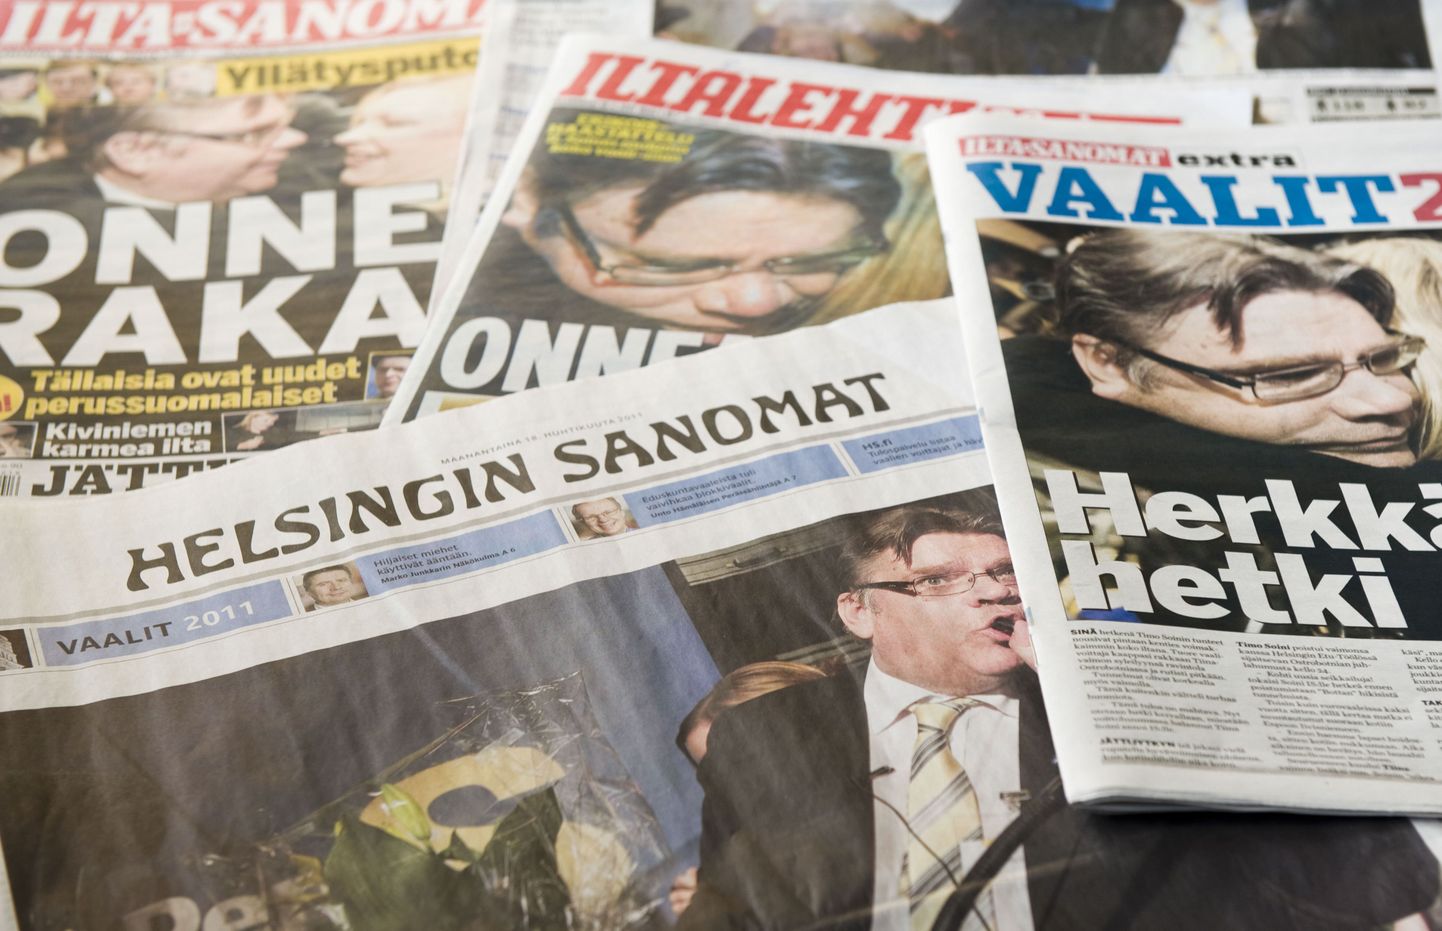 Põlissoomlaste valimisedu kajastused Soome ajalehtede esikülgedel.